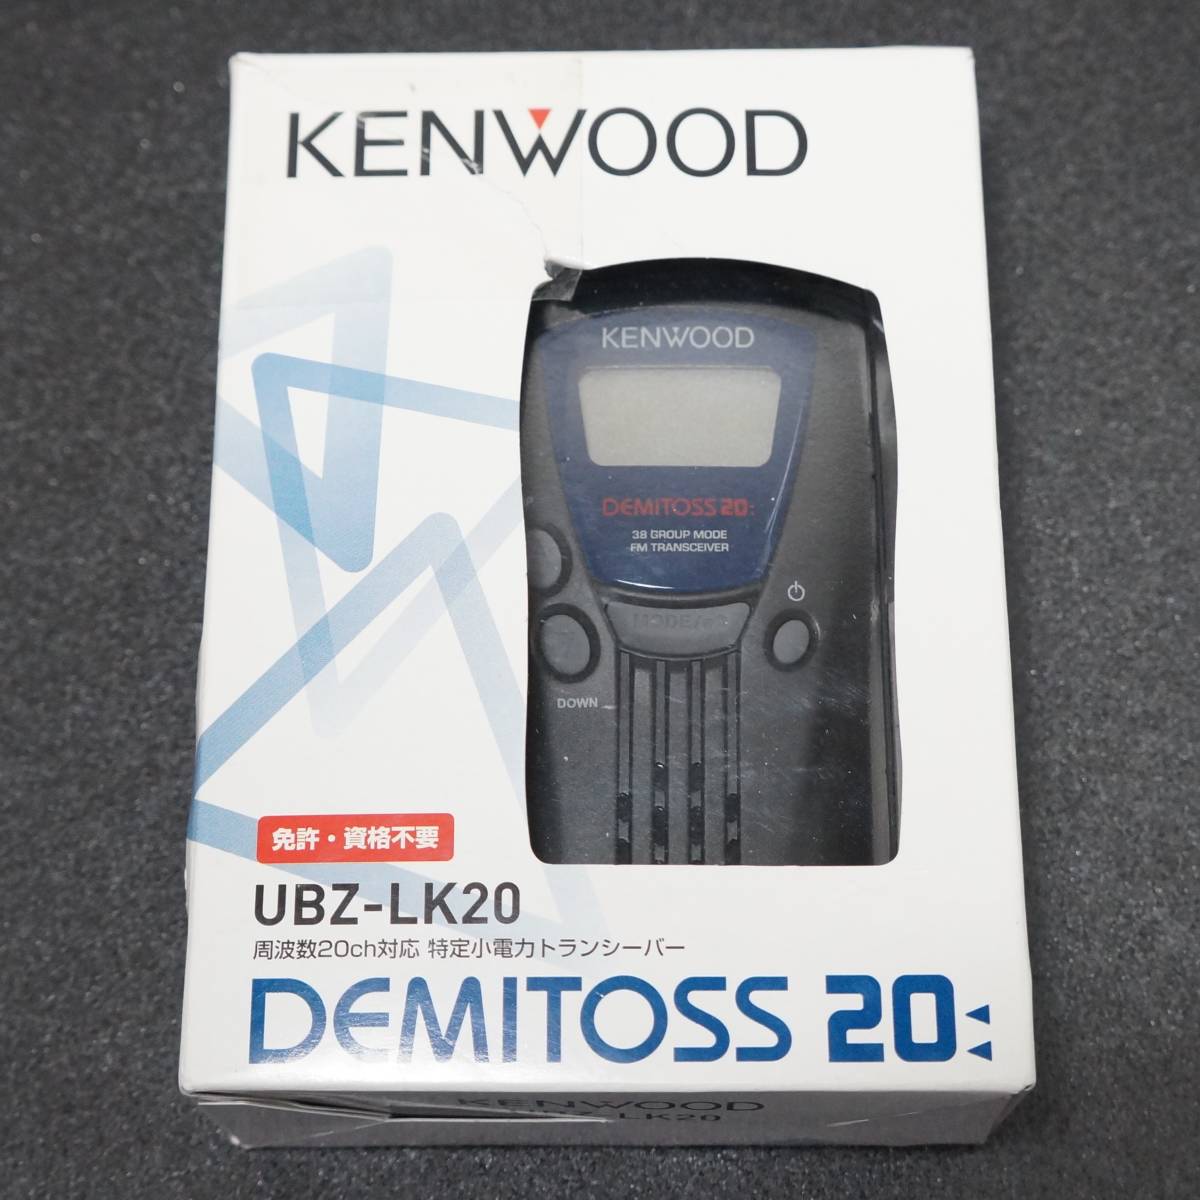 送料無料 未使用品 『 KENWOOD UBZ-LK20 DEMITOSS 20 』 箱・付属品あり ケンウッド 特定小電力トランシーバー 箱破れあり_画像1